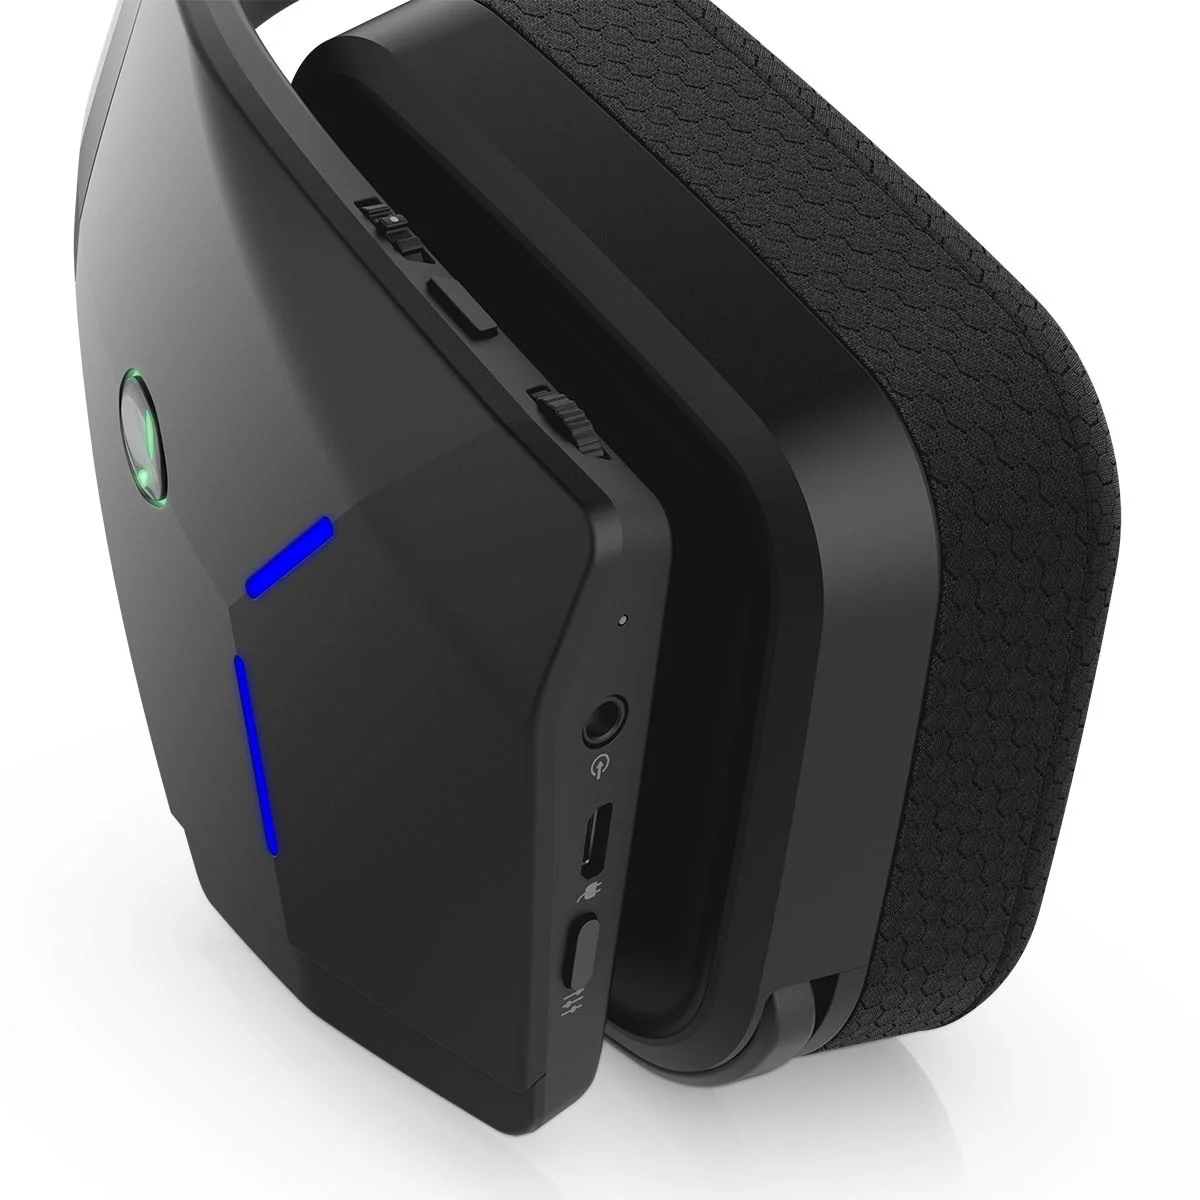 Alienware представила беспроводную гарнитуру и геймерскую мышь - фото 3